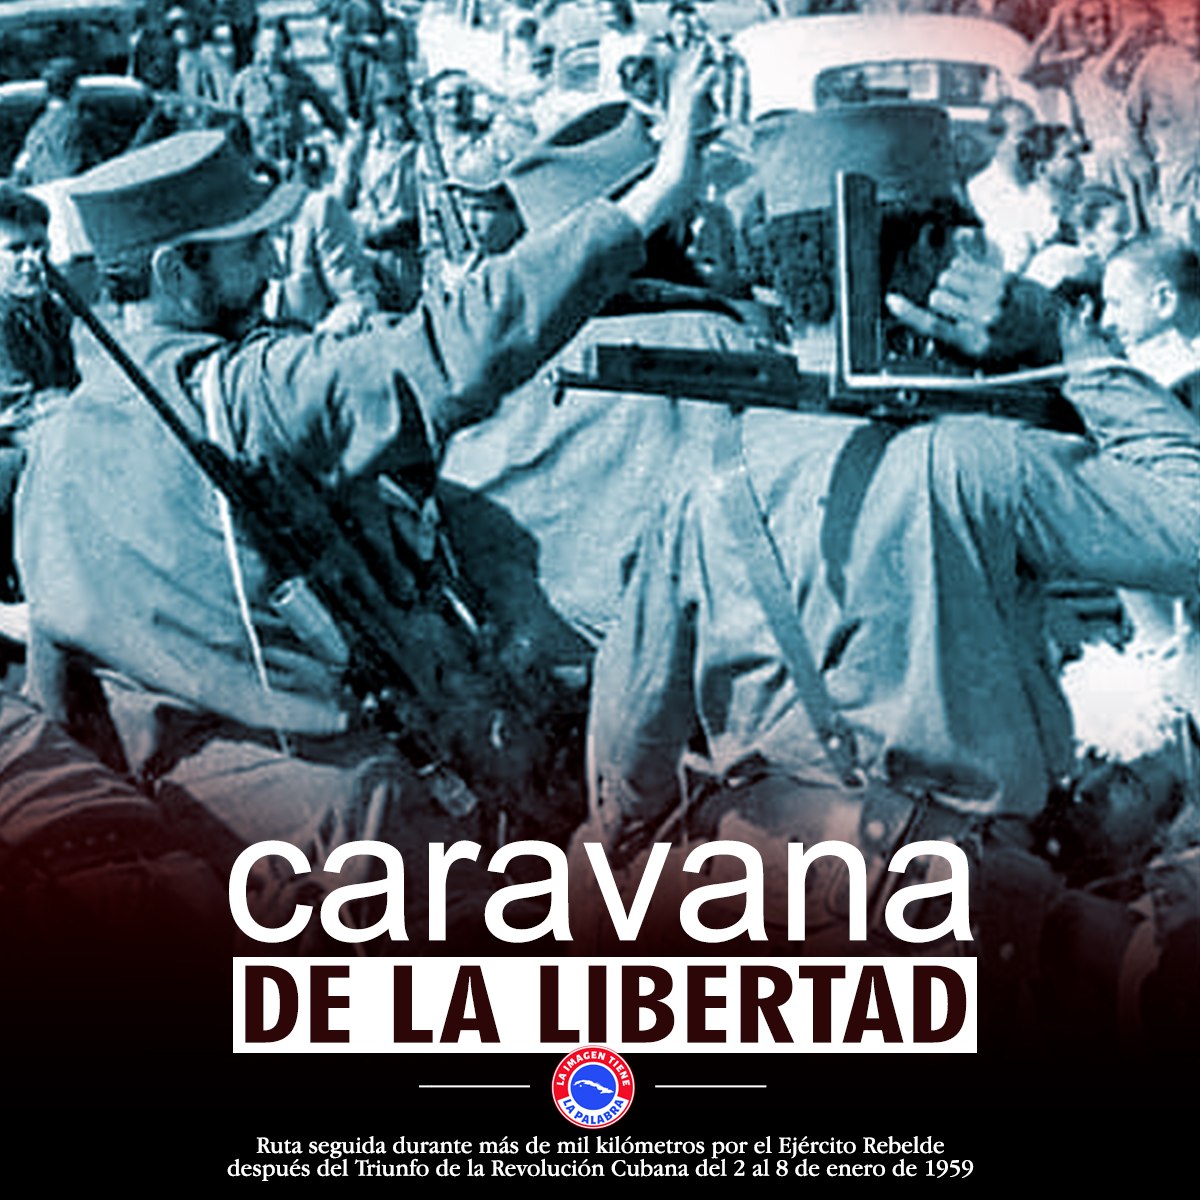 1959 | Entrada victoriosa de la Caravana de la Libertad a La Habana.
#CubaViveEnSuHistoria
#CaravanaDeLaLibertad
#EneroDeVictorias